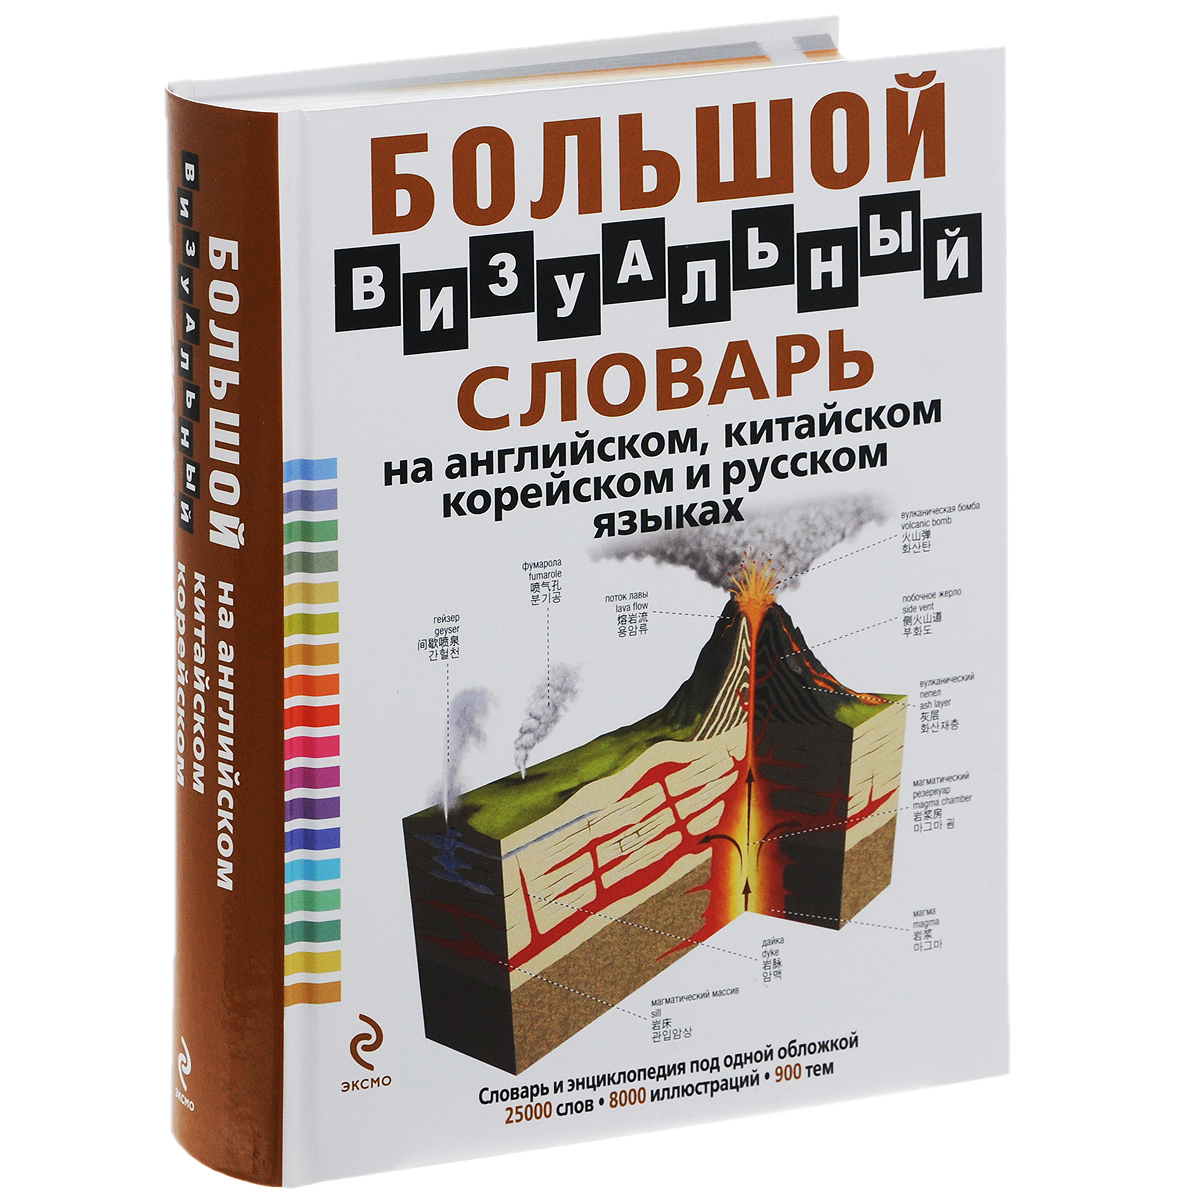 Большой визуальный словарь на английском, китайском, корейском и русском языках